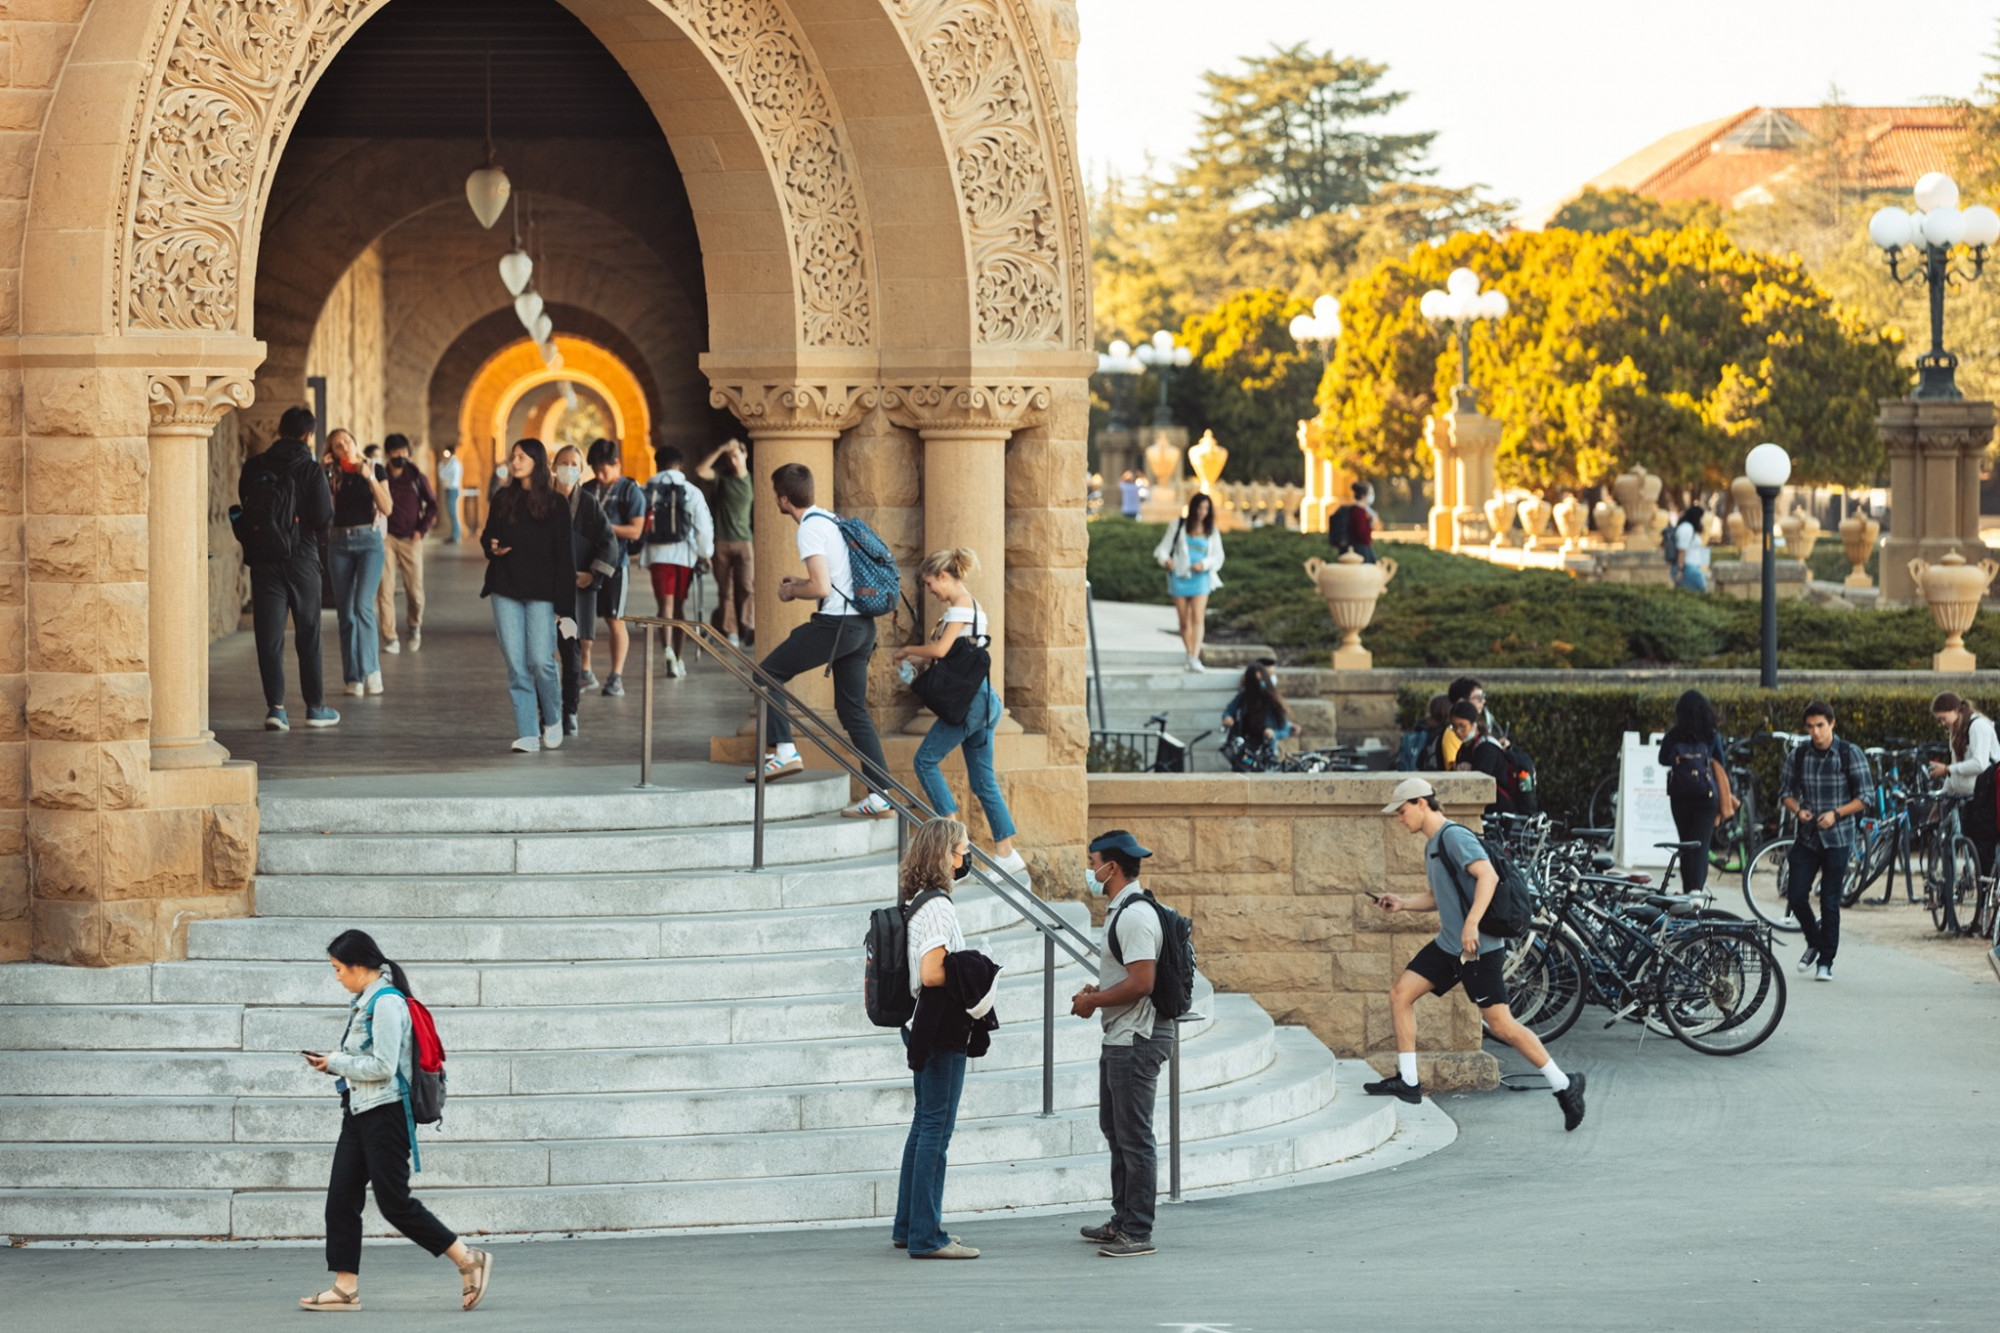 Đại học Stanford là một trong những cơ sở đào tạo có tỷ lệ tuyển sinh đầu vào thấp nhất nước Mỹ do quá trình tuyển chọn khắt khe - Ảnh: Stanford University